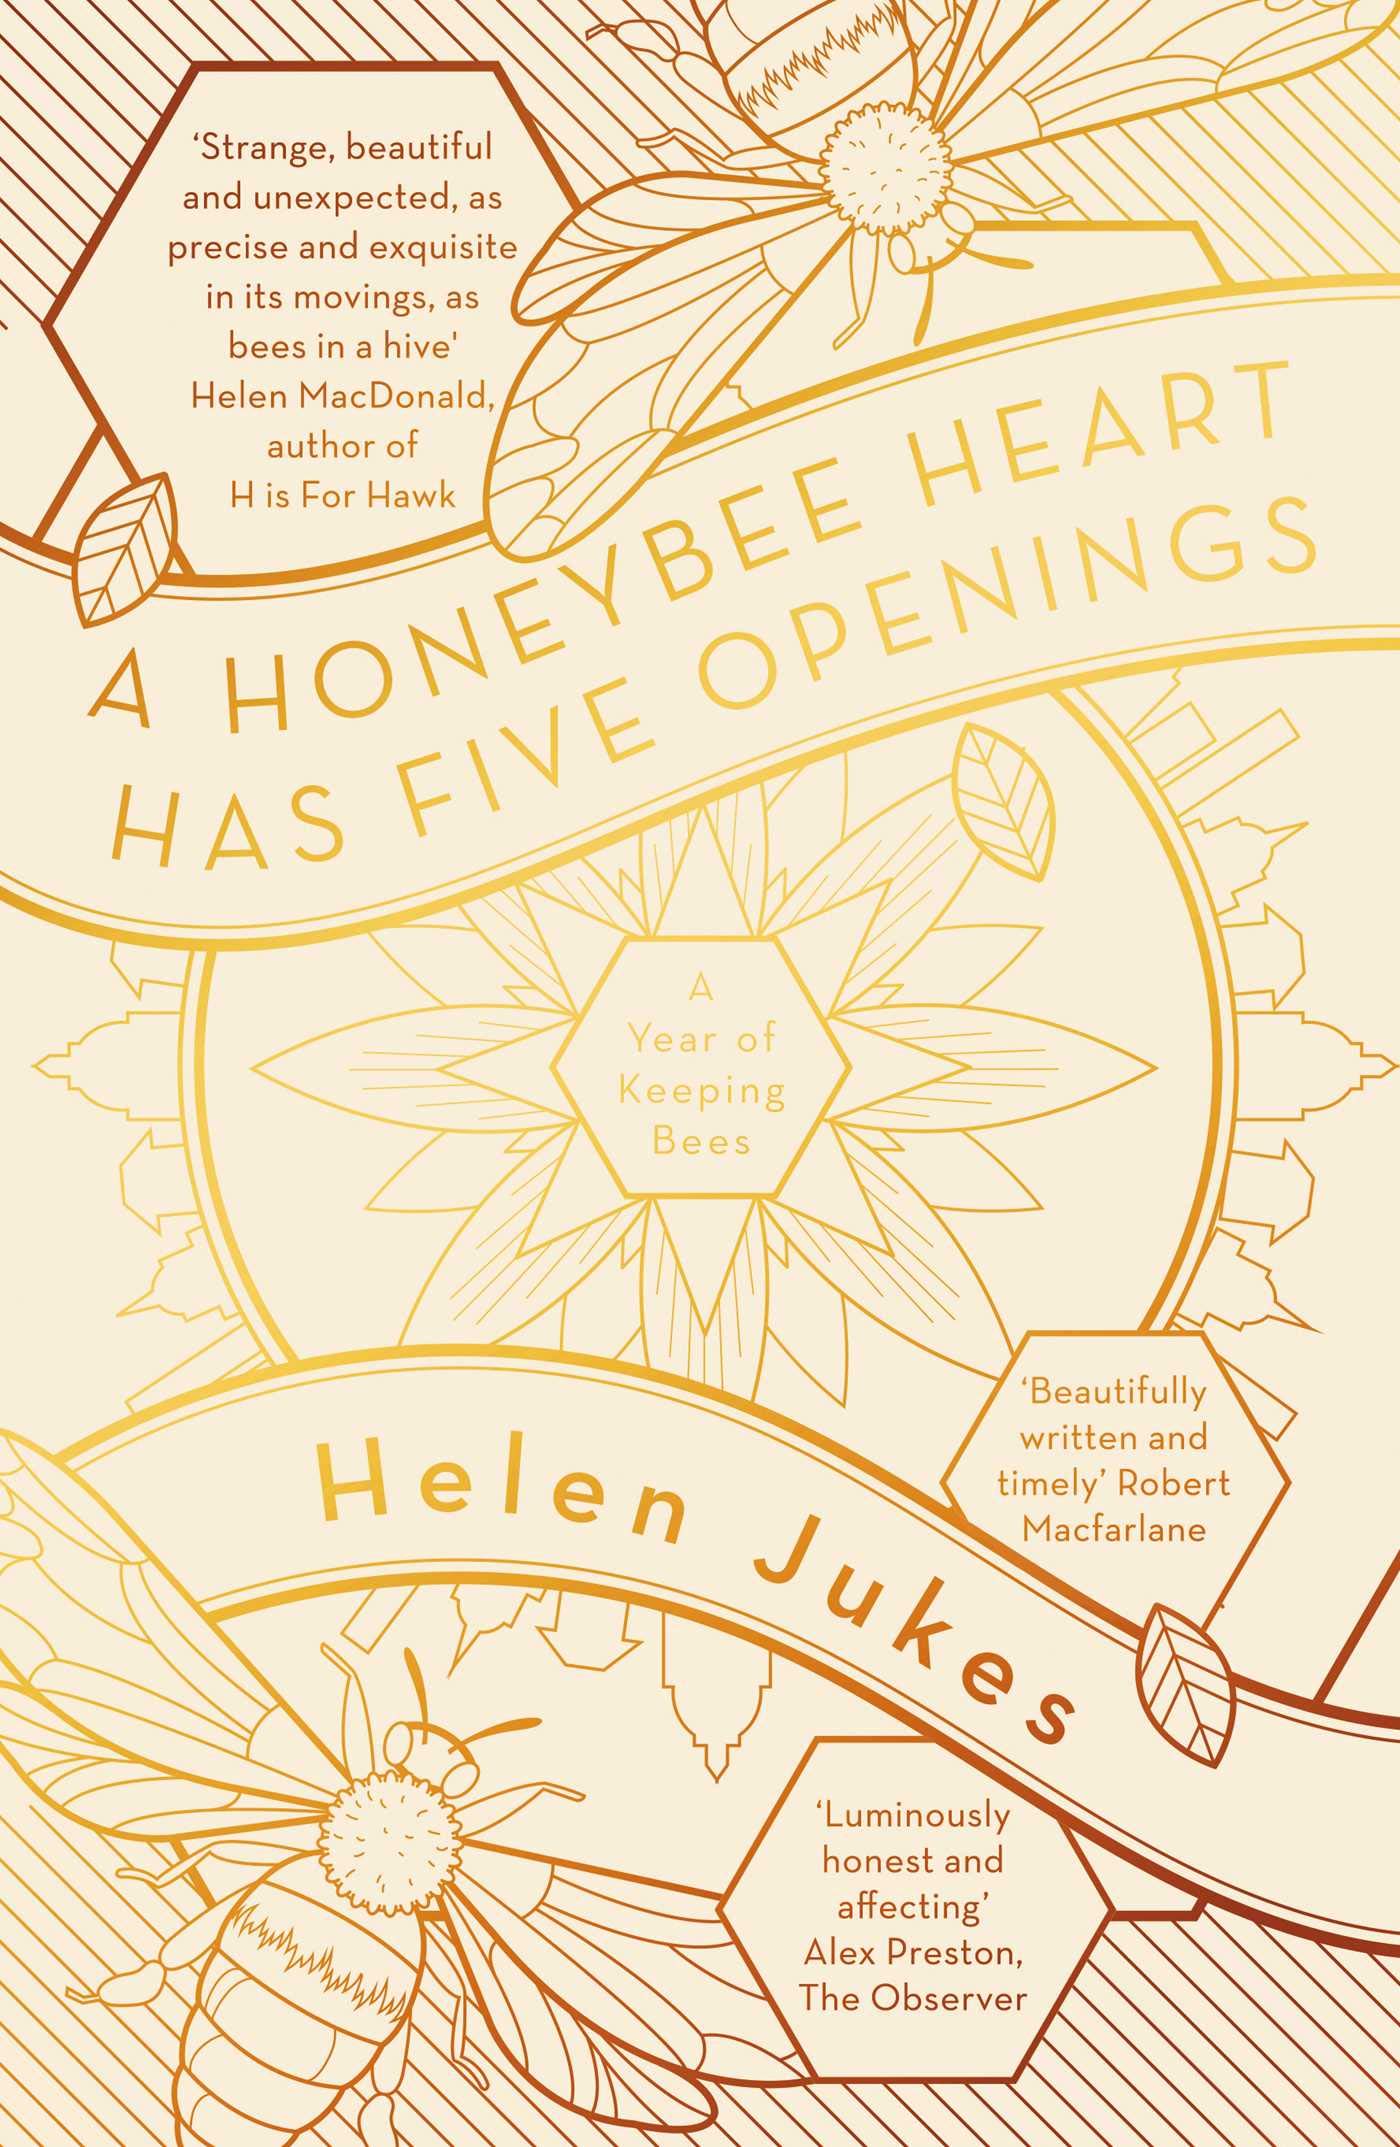 A Honeybee Heart Has Five Openings |